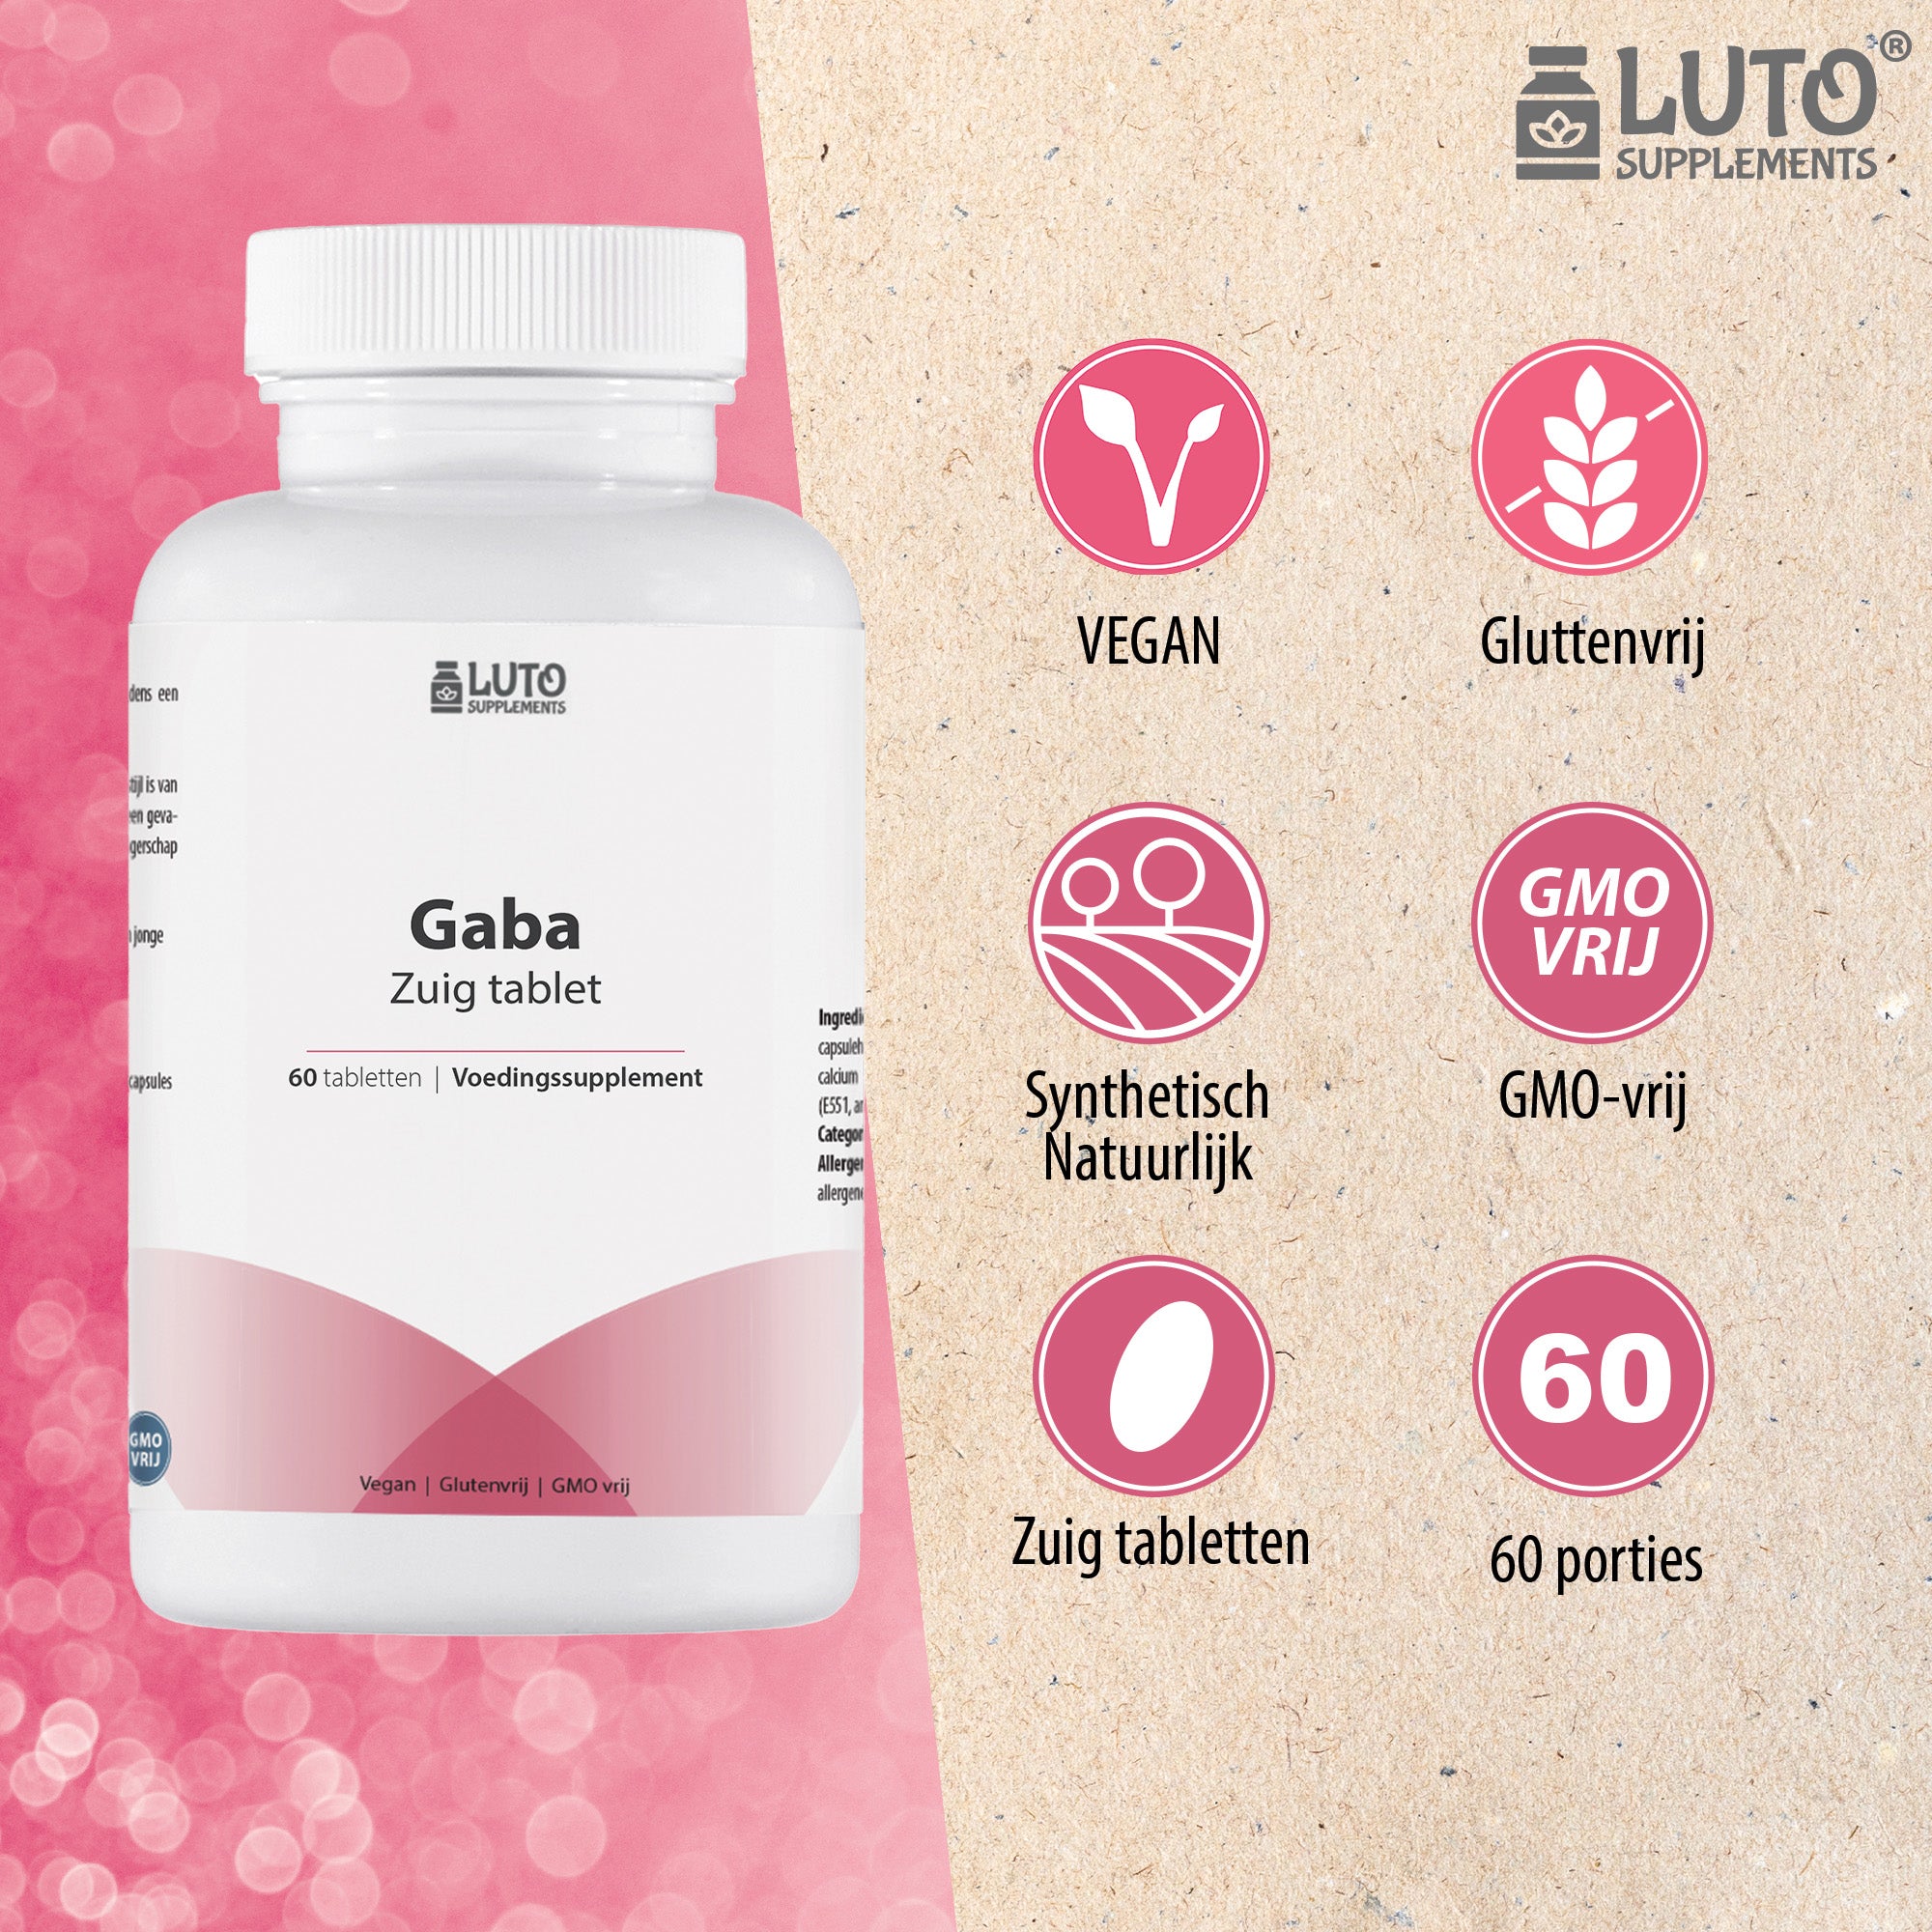 GABA met L-theanine | 700 mg GABA | 60 Zuig tabletten | Natuurlijke rustgever | Actief vitamine B6 (P-5-P) | Vegan | Luto Supplements